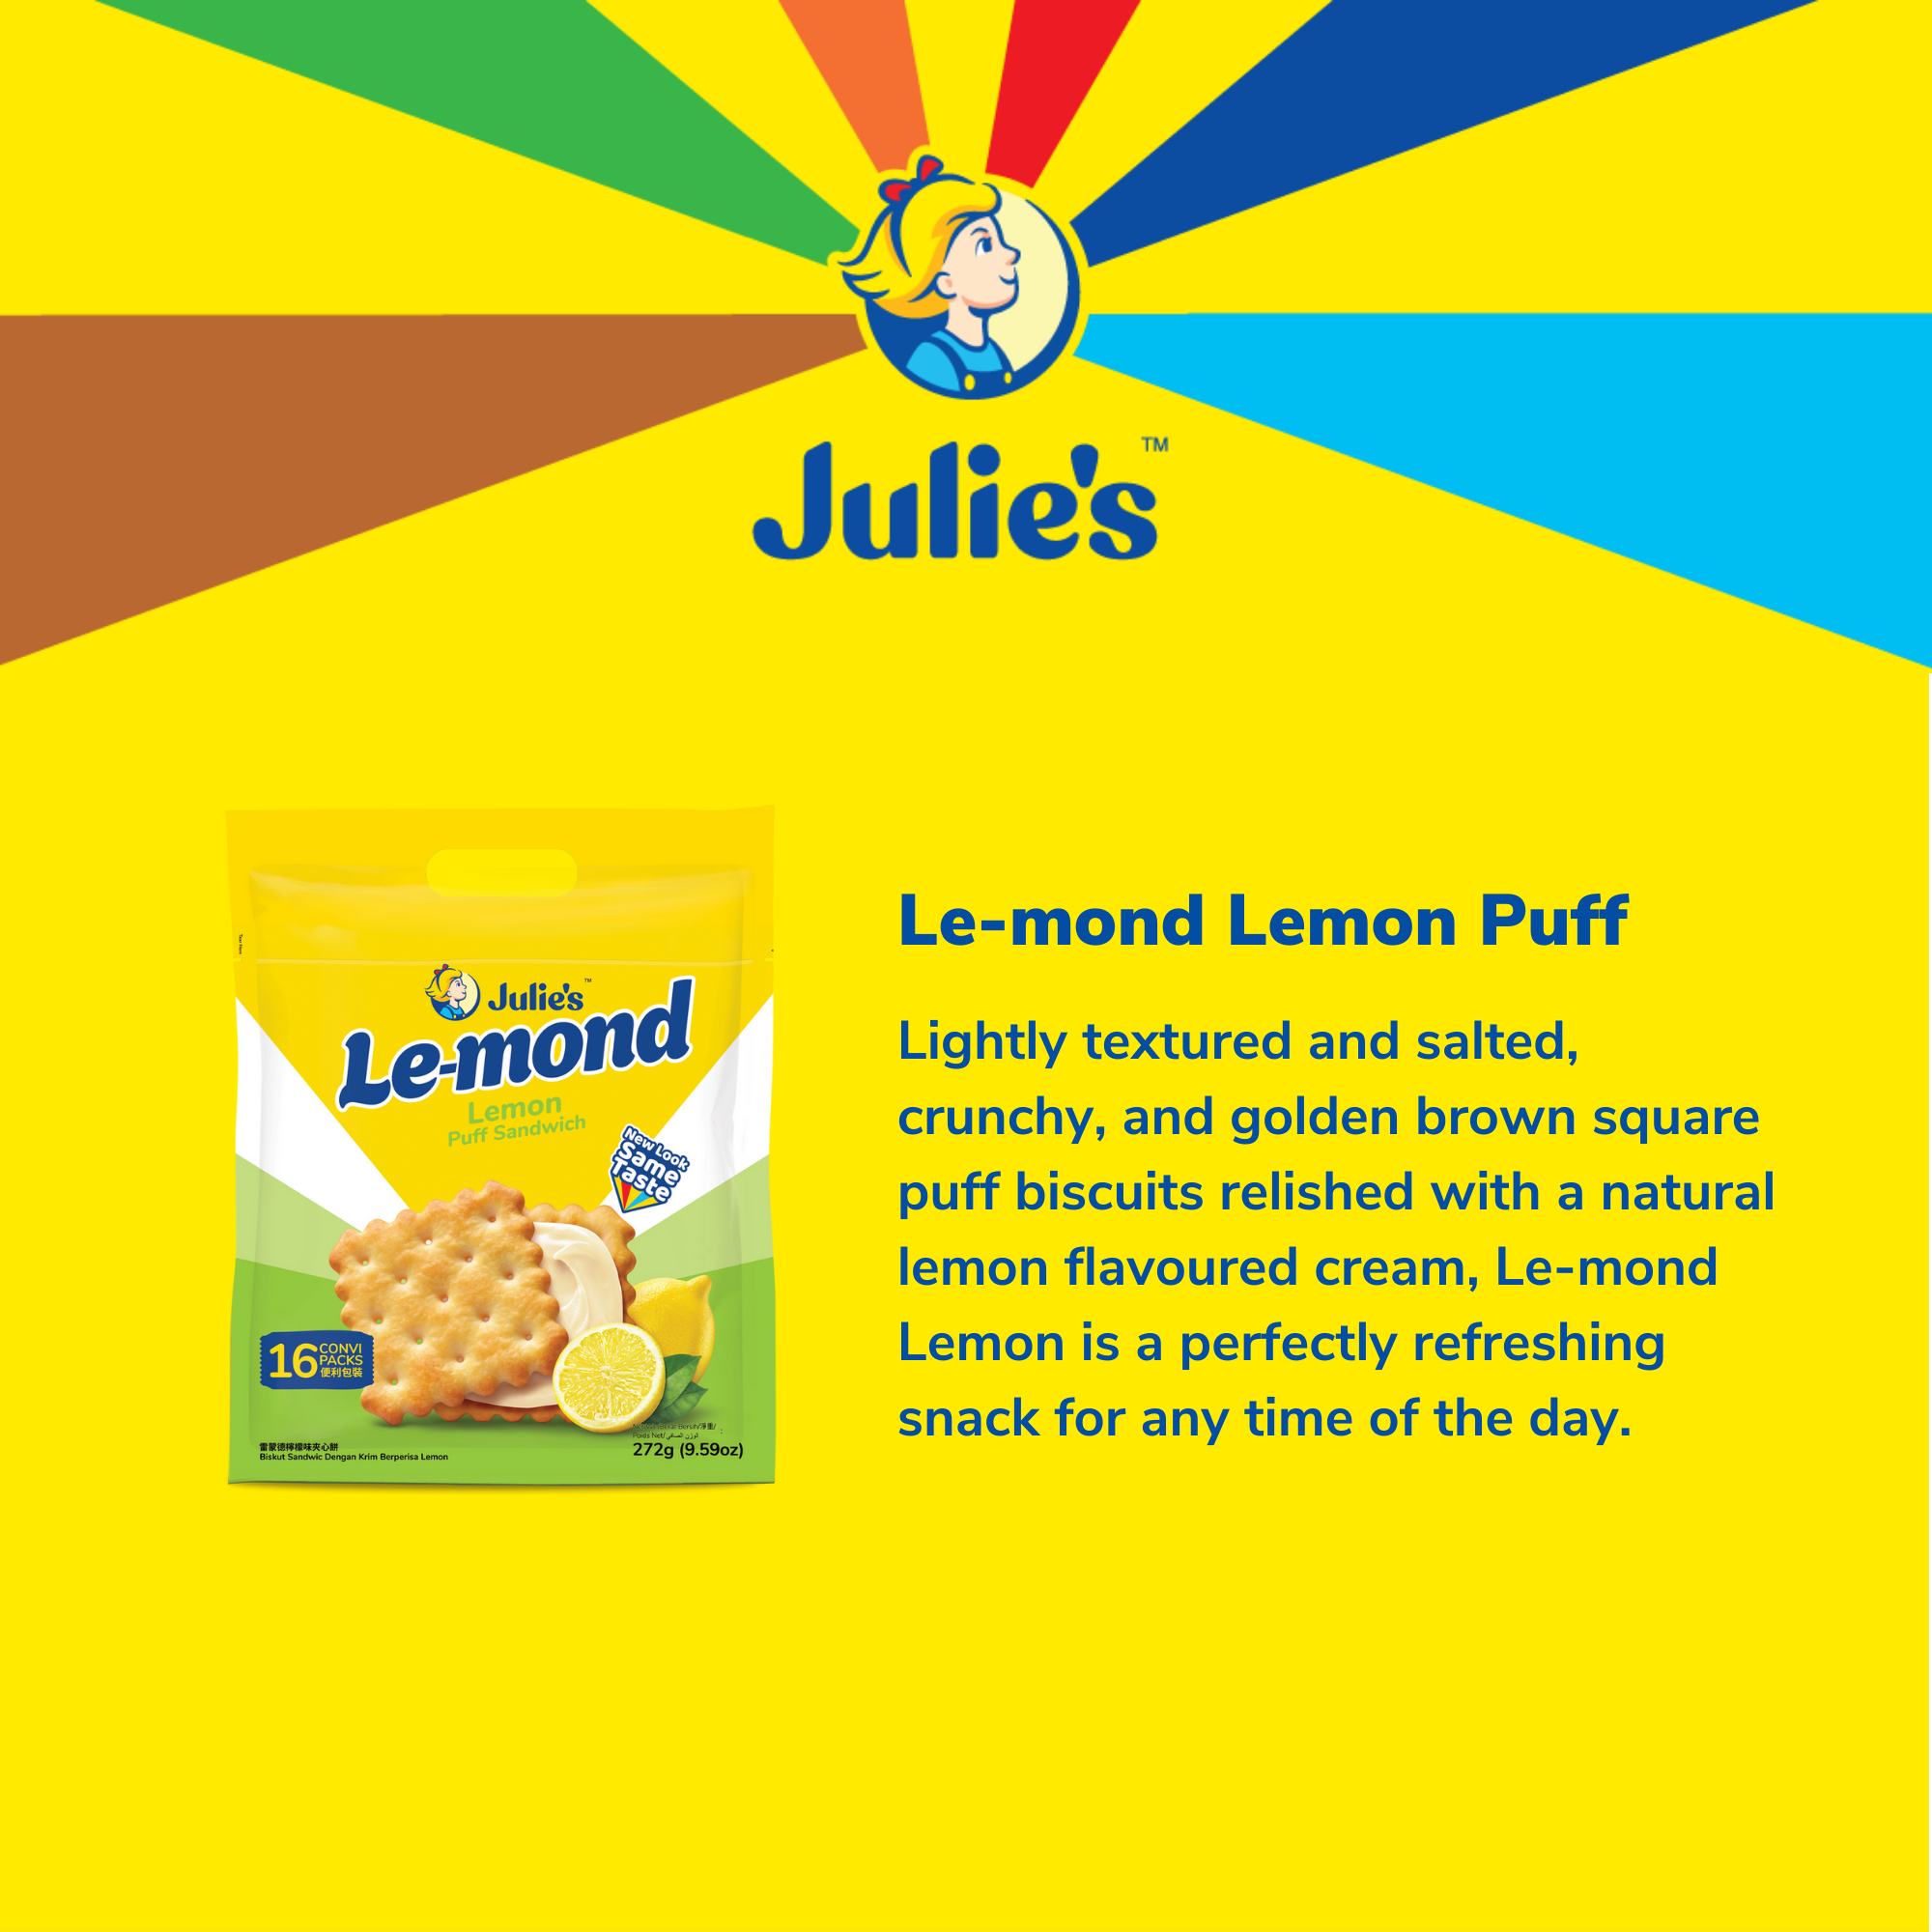 Julie's Le-mond Lemon Puff Sandwich 272g x 3 packs